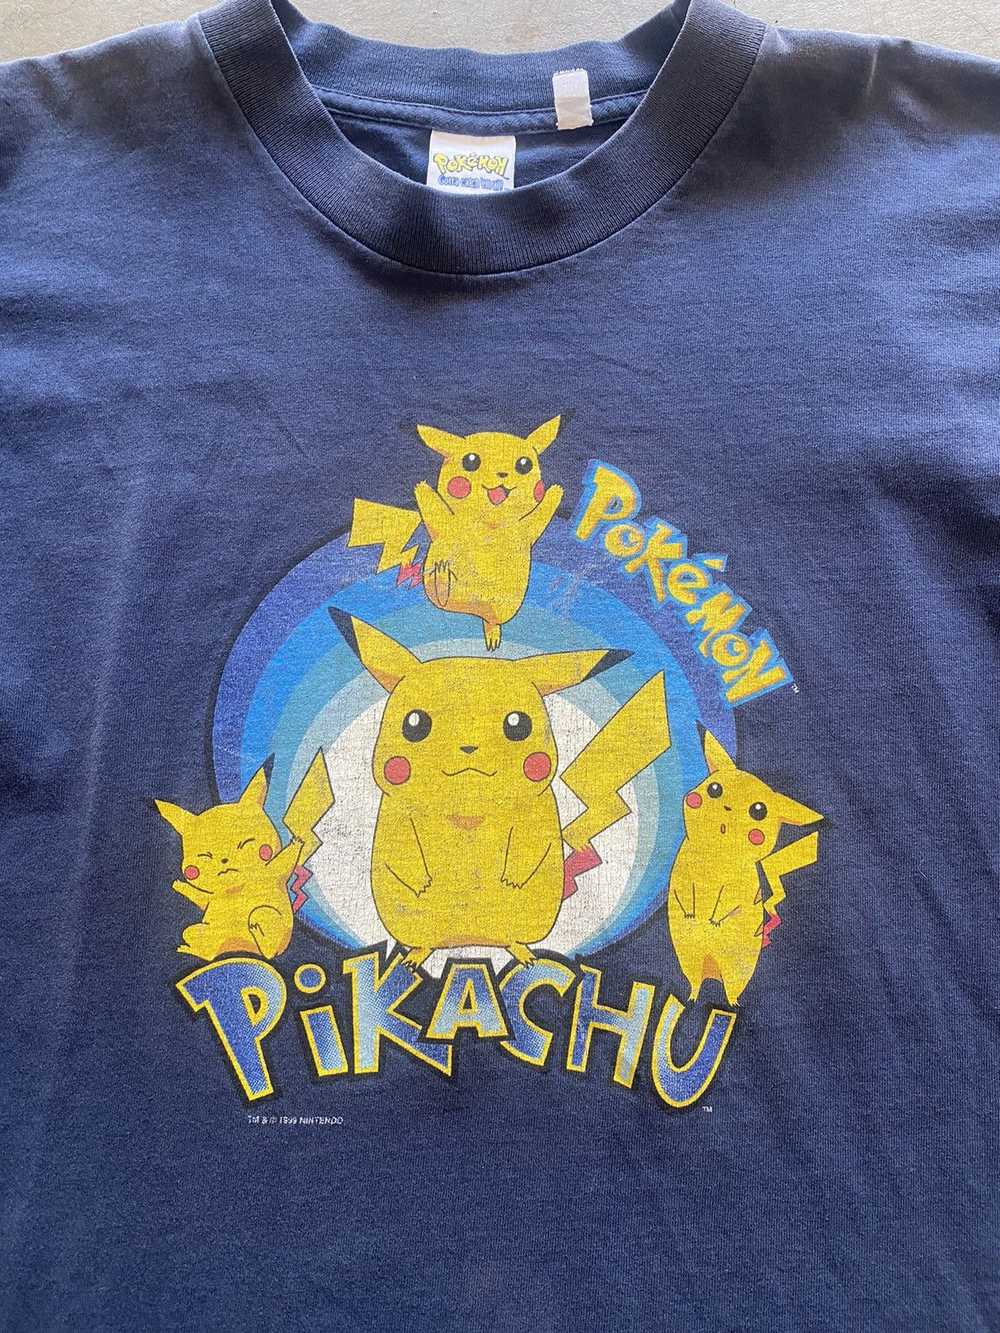 Vintage Vintage Pokémon Pikachu Tee - image 2